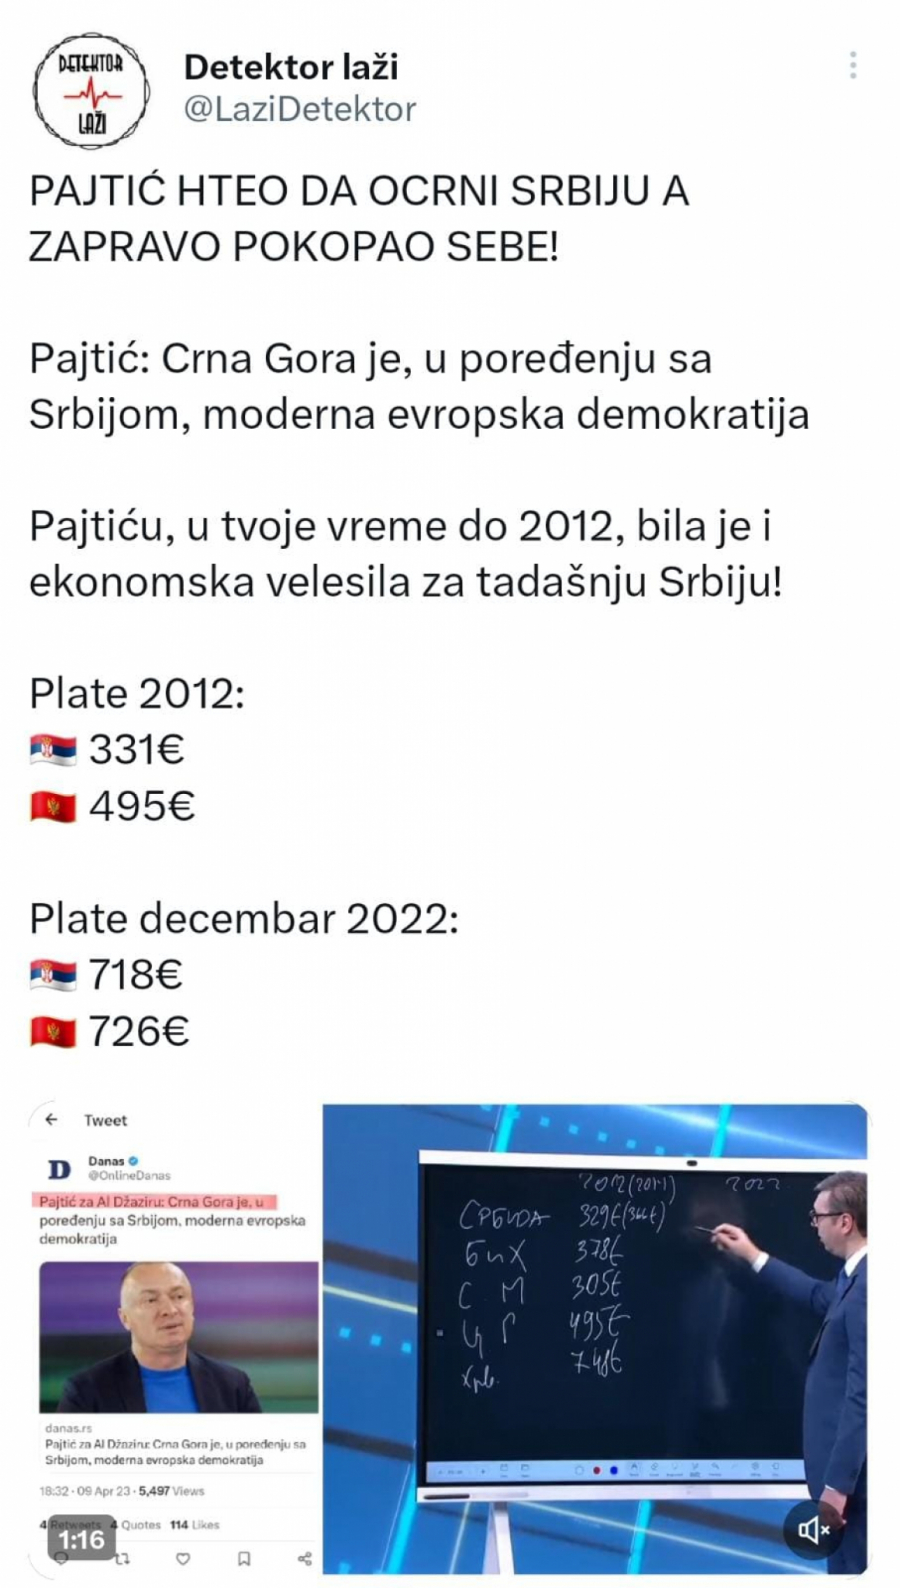 PAJTIĆU, 2012. JE PROŠLA! U pokušaju da ocrni Srbiju, pokopao samog sebe!